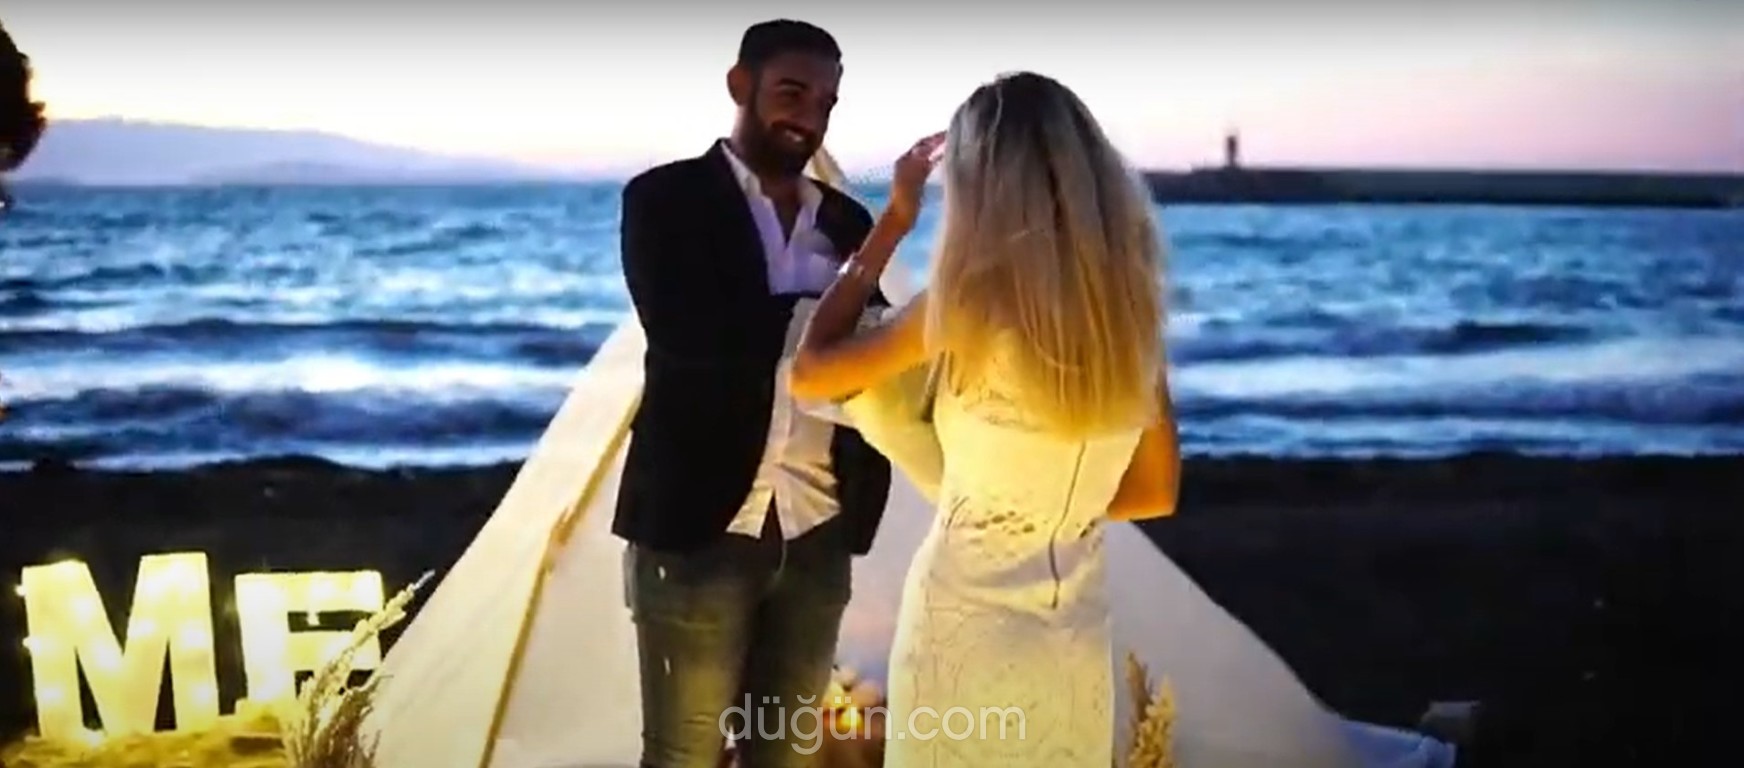 Evlilik Teklifi İzmir